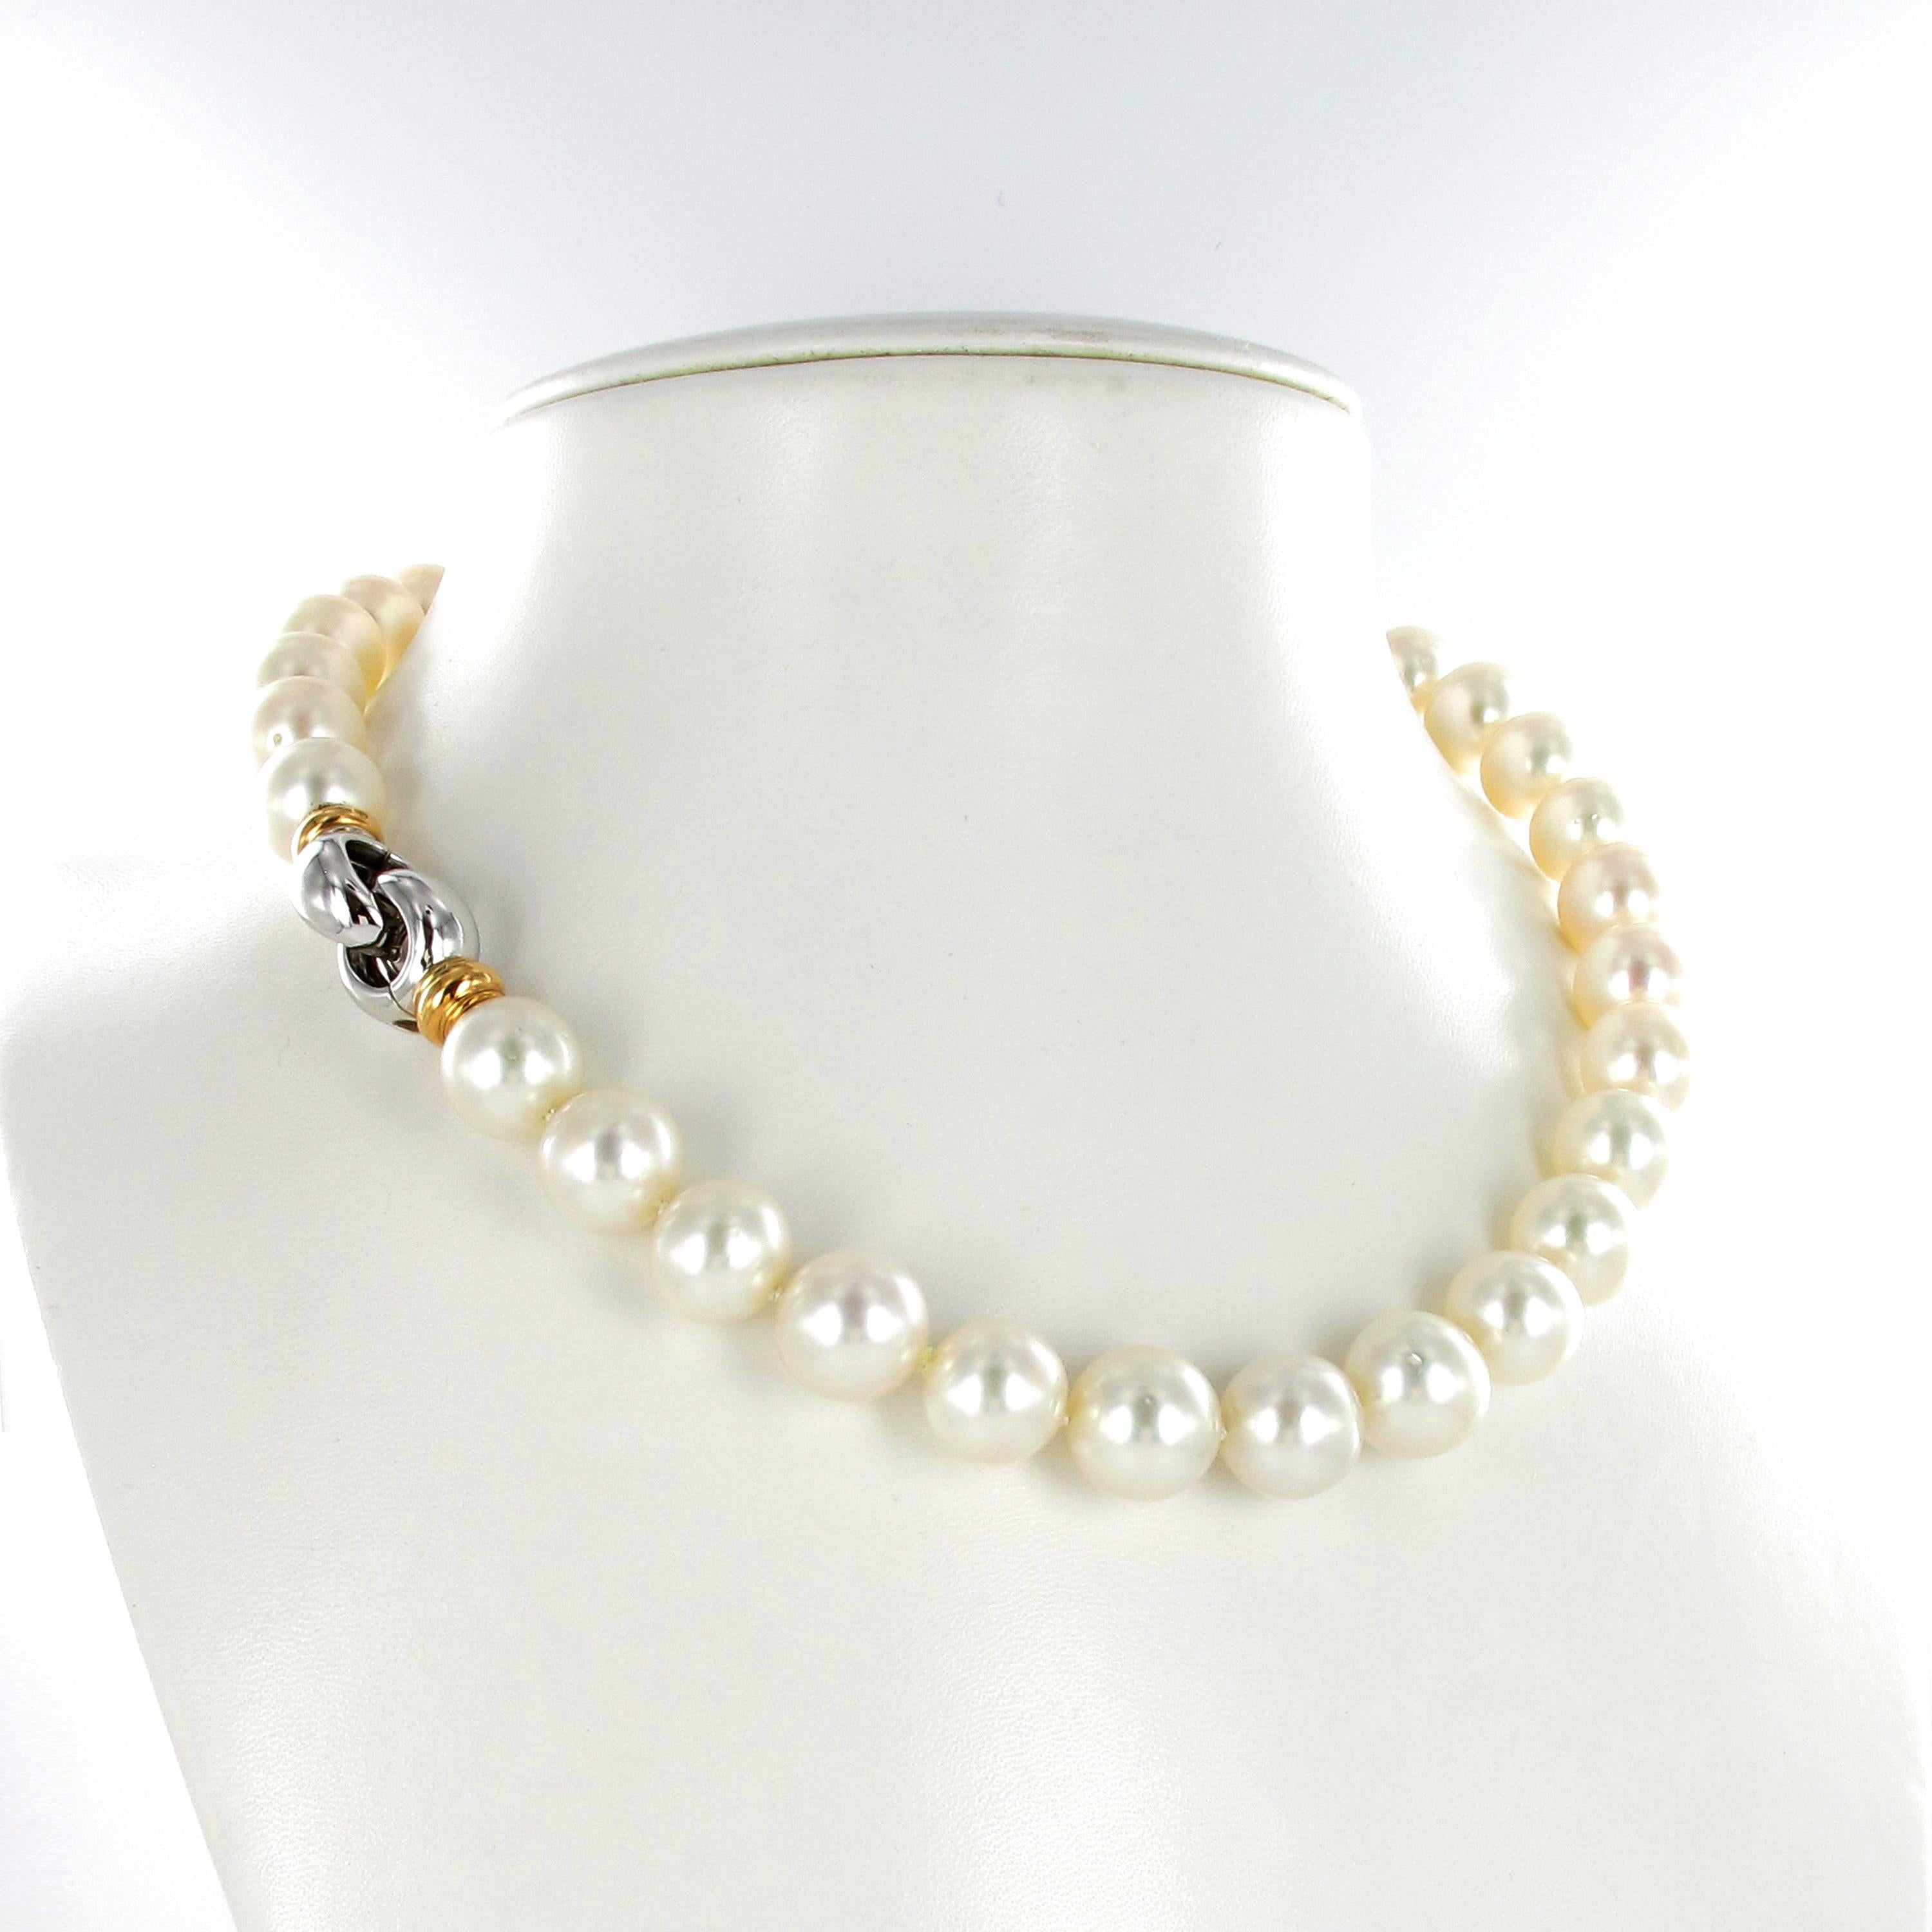 Ce collier est composé de 33 perles de culture blanches des mers du Sud, presque rondes, de 13,0 mm à 13,9 mm, avec un très bon lustre. Décoré d'un fermoir en or blanc et rose 18 carats.

Longueur : 48.0 cm / 18.89 Inches
Marque du fabricant :